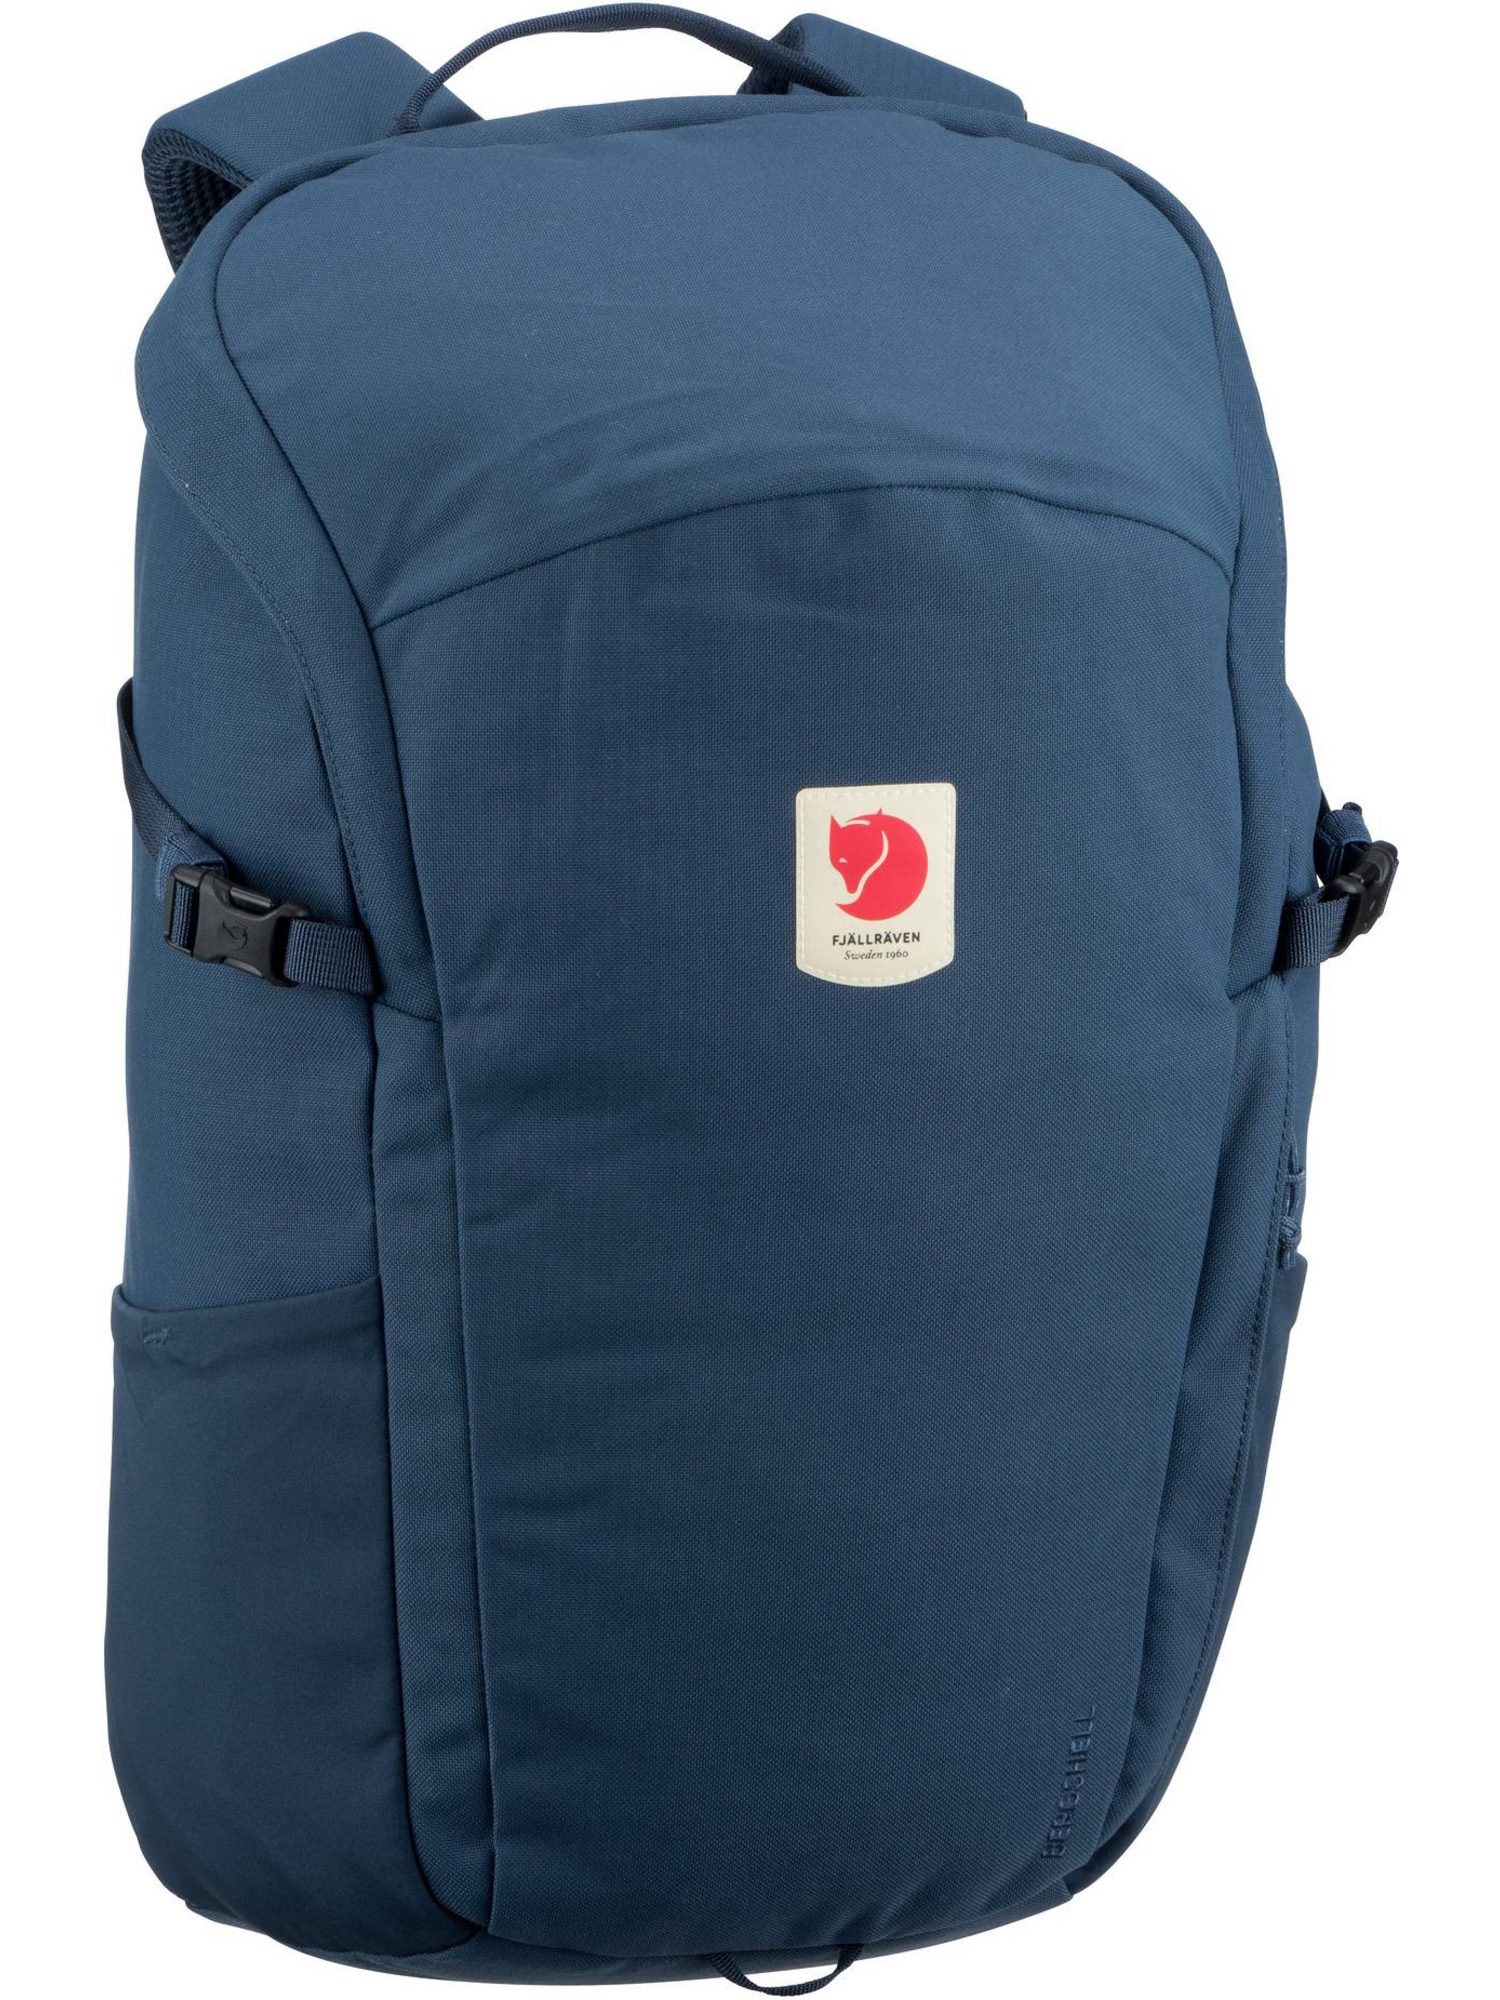 Рюкзак FJÄLLRÄVEN/Backpack Ulvö 23, цвет Mountain Blue рюкзак ulvö rolltop 30 fjällräven черный